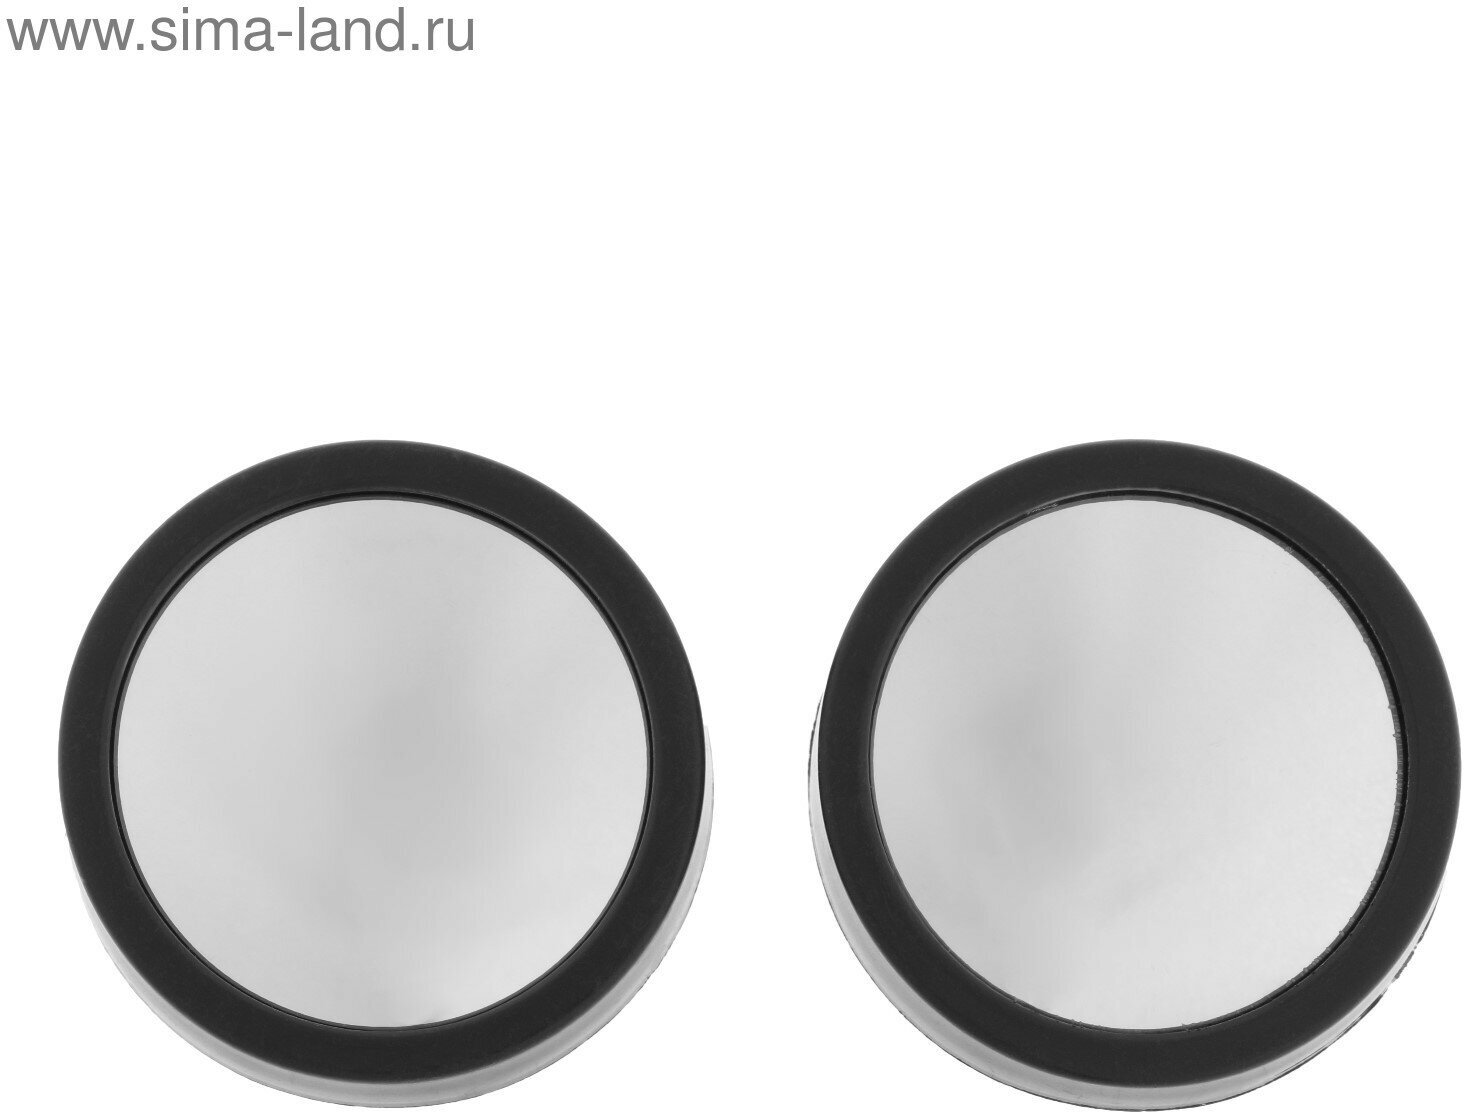 Зеркало сферическое, 50 мм, черный, набор 2 шт (1шт.)